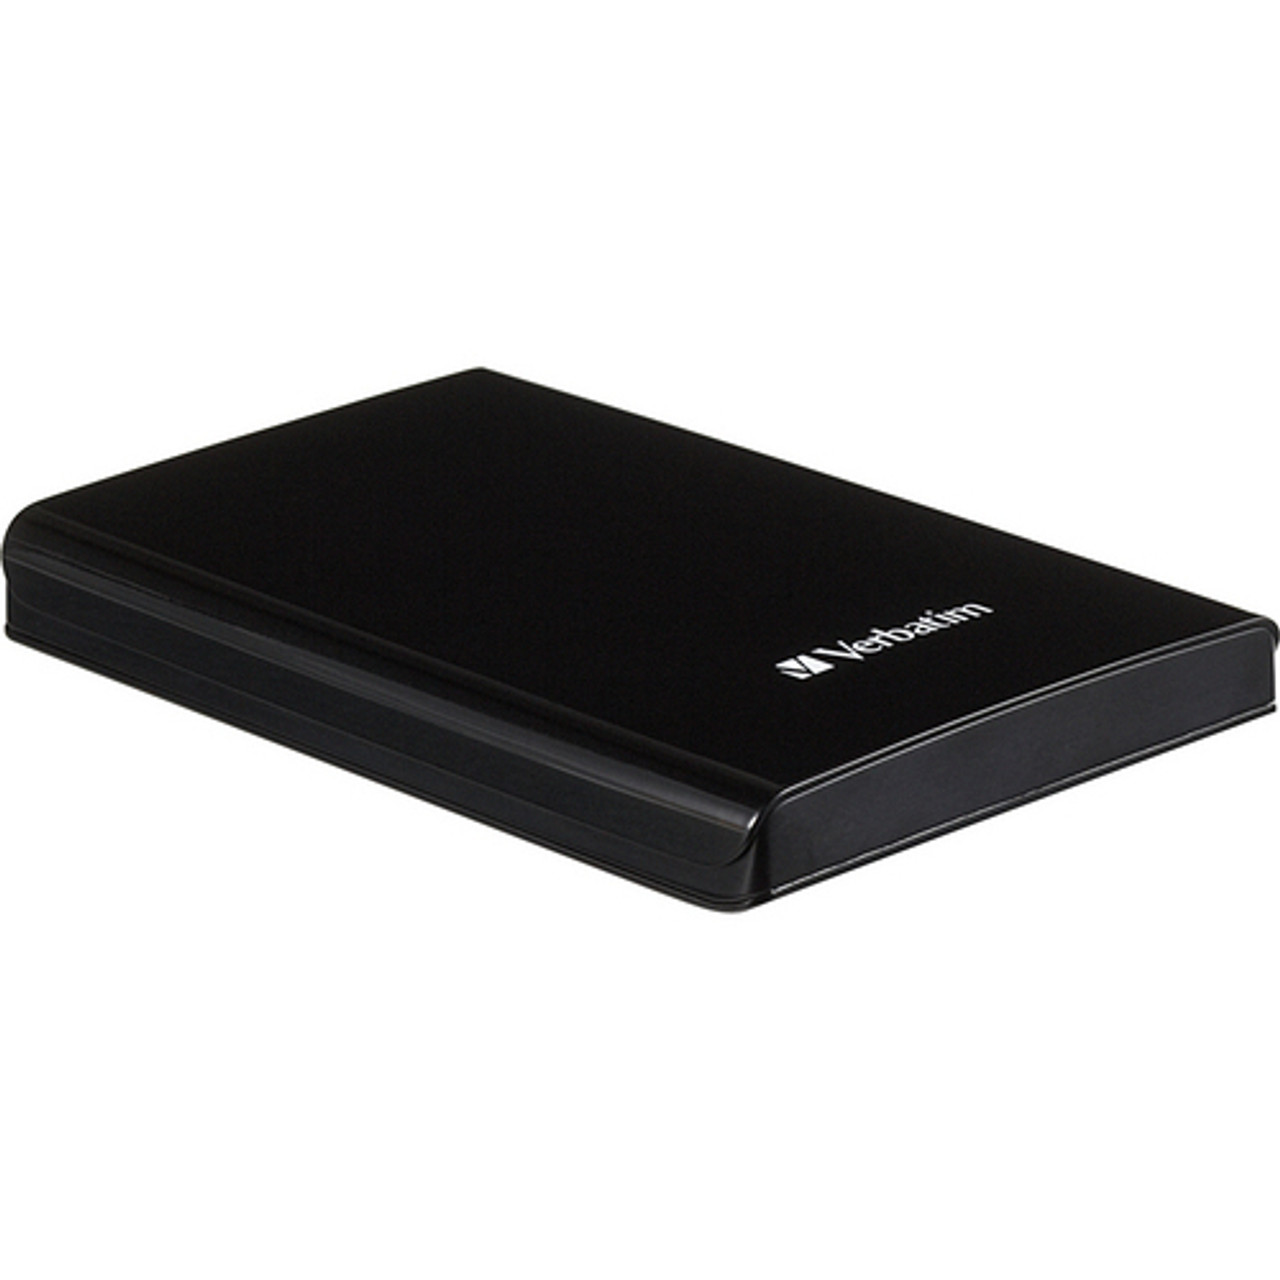 Verbatim 1TB Store 'n' Go USB 3.0 9.5mm 1000GB Black external hard drive